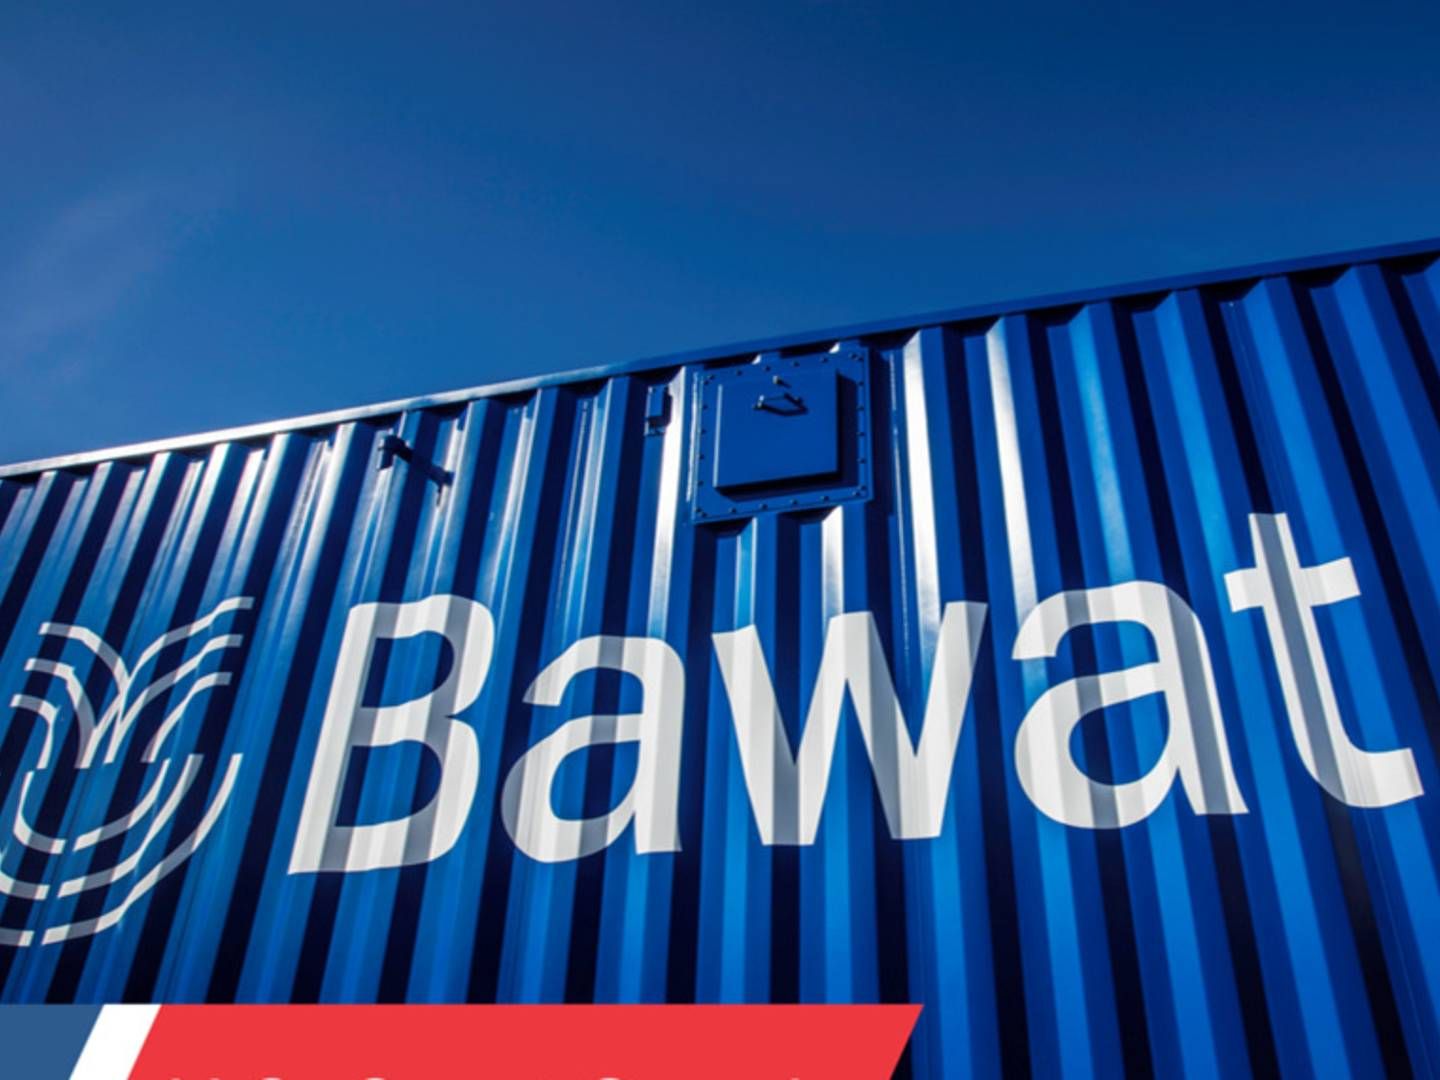 Bawat og Damen-koncernen indgik allerede i januar sidste år en distributøraftale. | Foto: Bawat